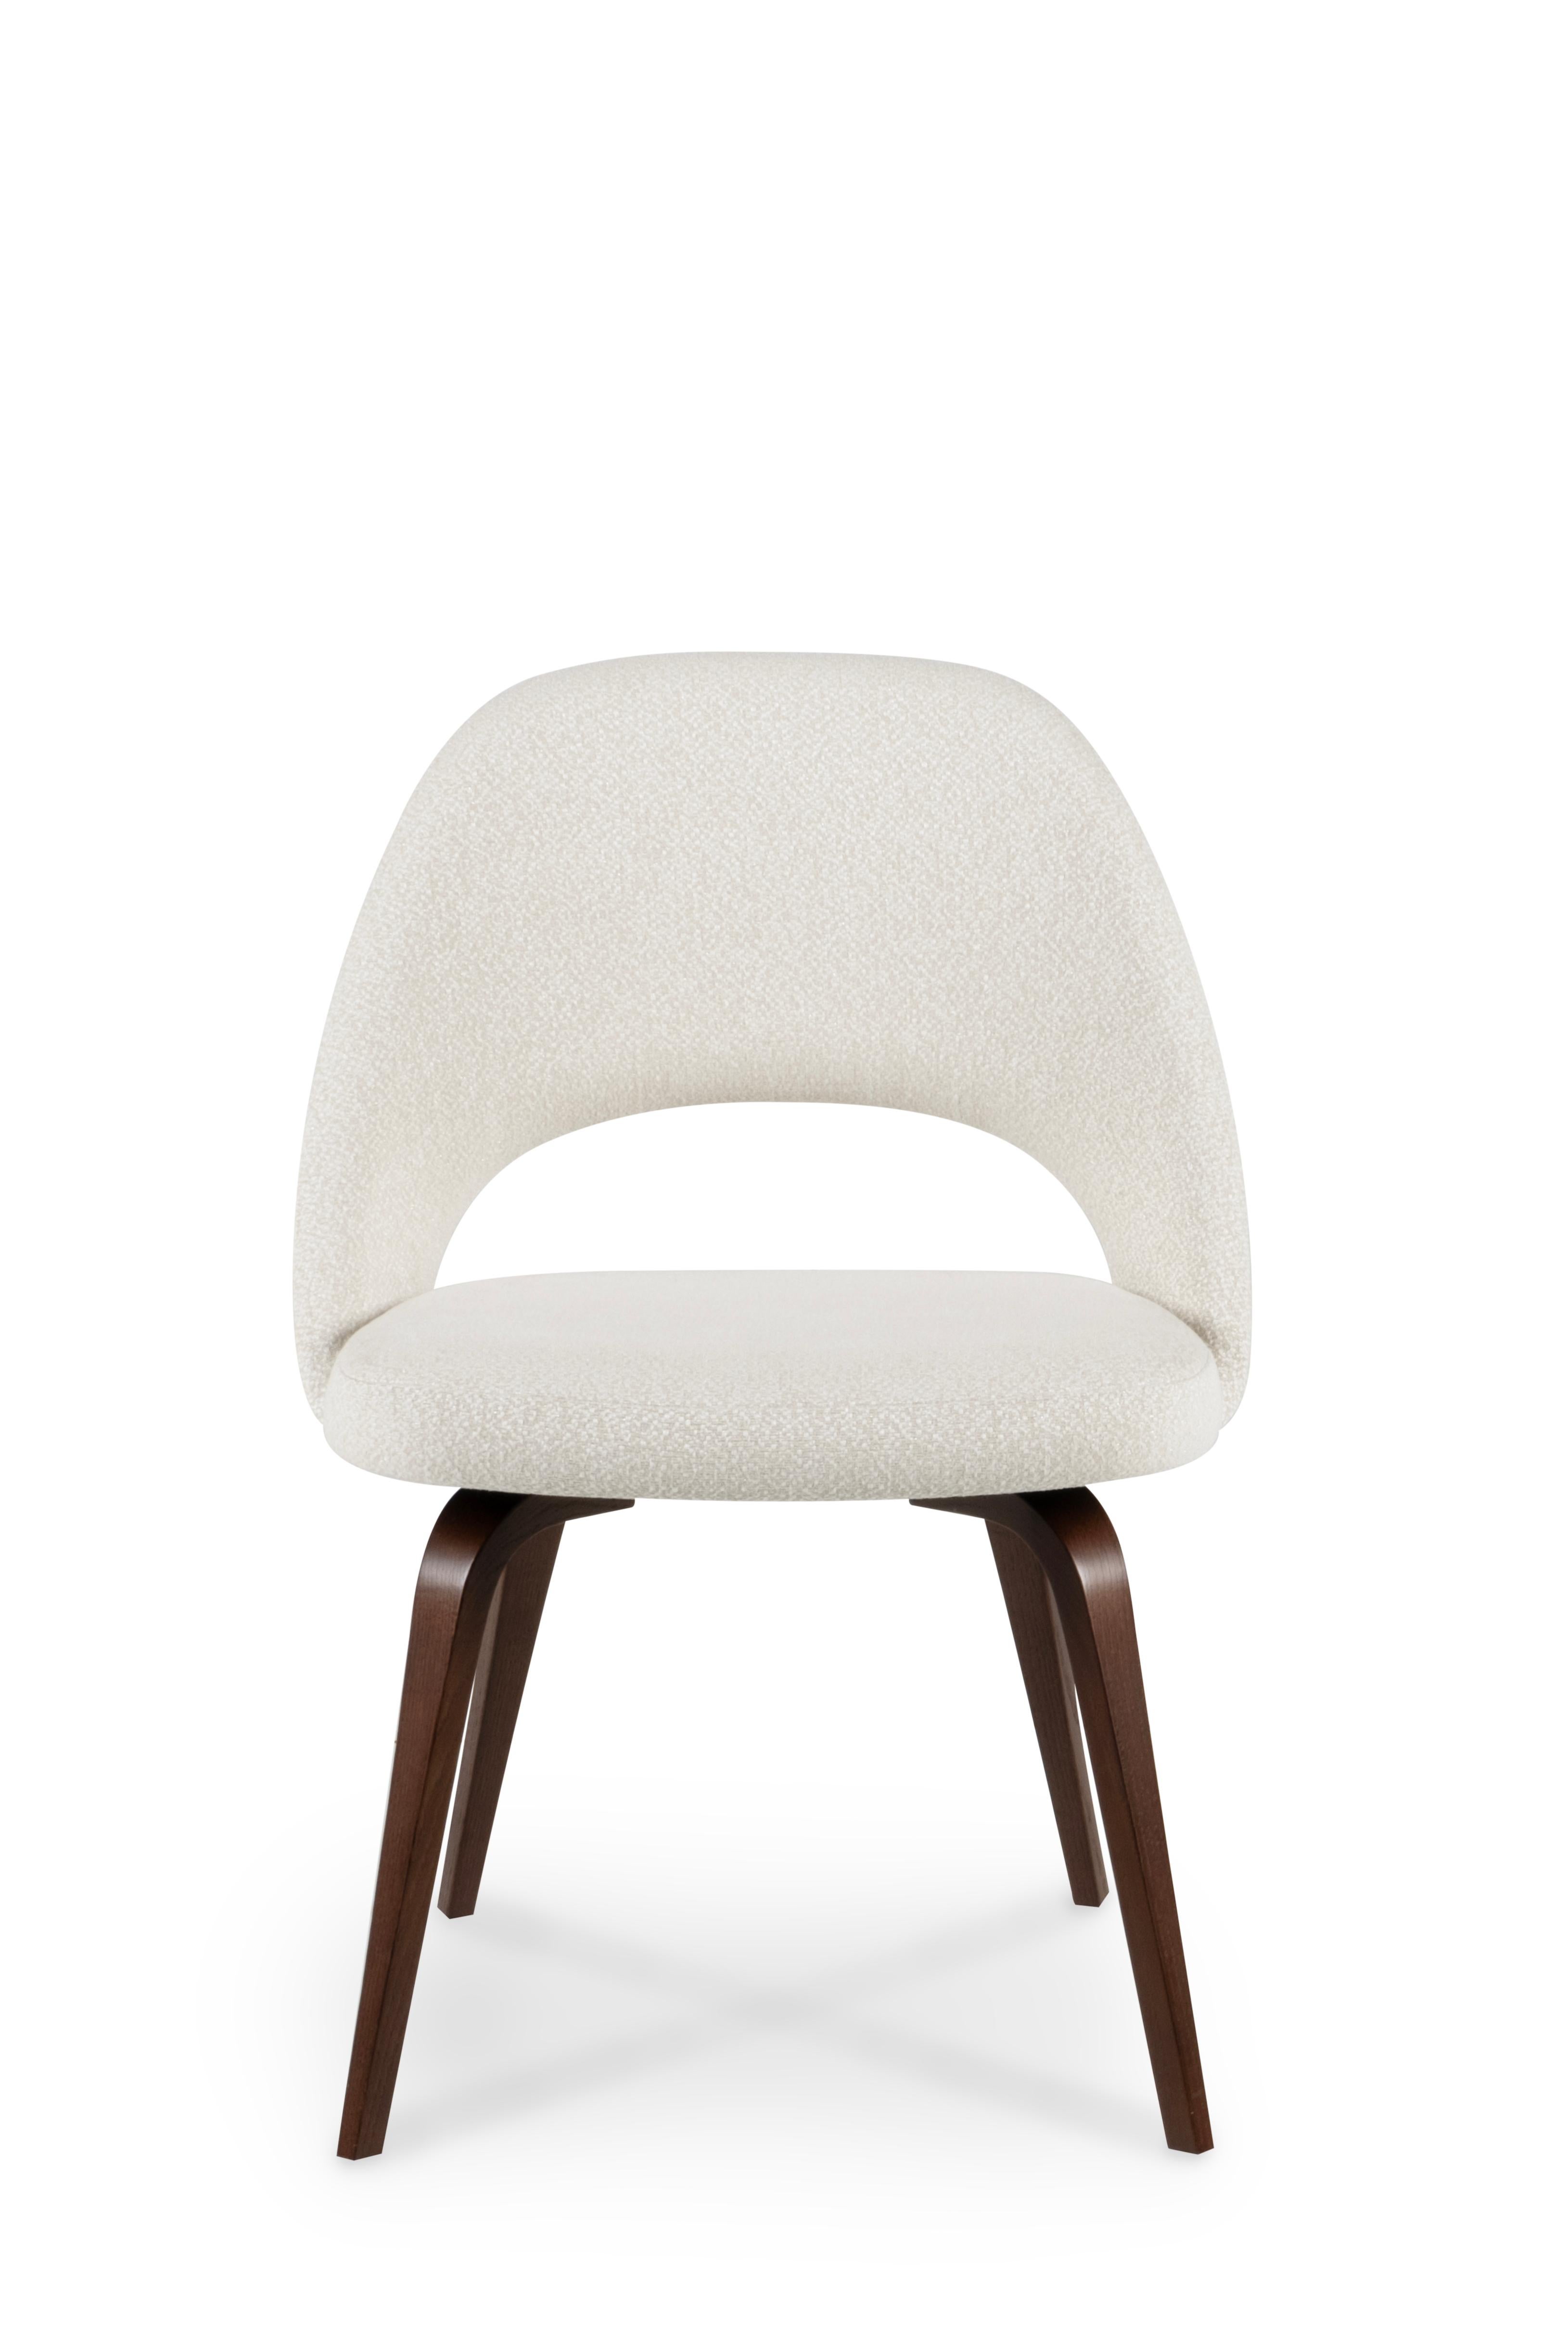 Collectional Vintage Pair of  Chaises de direction par Eero Saarinen pour Knoll.

Eero Saarinen a conçu le mobilier comme un moyen de résoudre des problèmes. Chacune de ses œuvres possède un vocabulaire formel distinct, étonnamment différent de